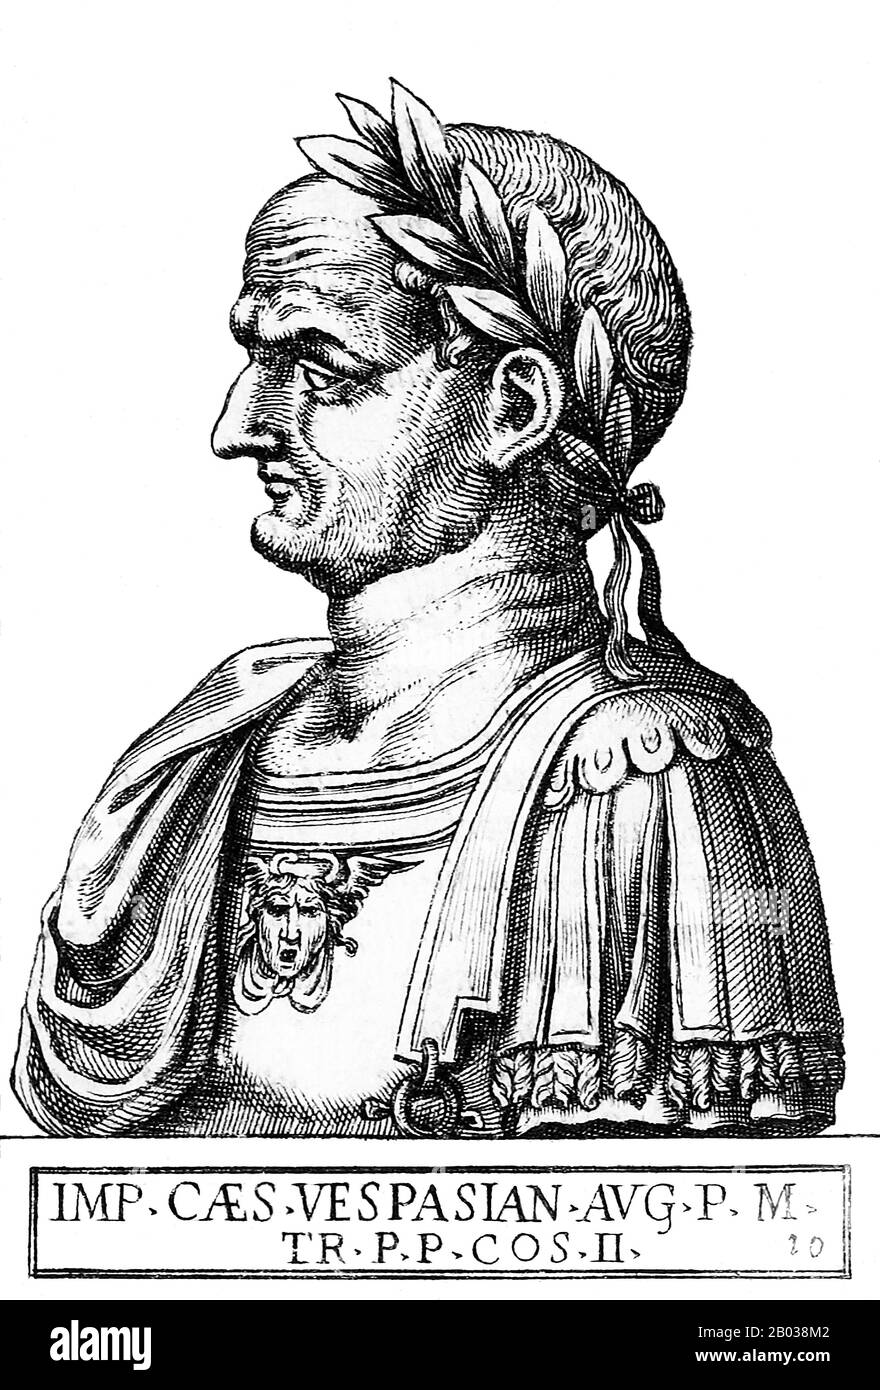 Da una famiglia equestre che è cresciuta a rango senatoriale sotto la distica Julio-Claudian, Vespasianus - come poi è stato chiamato - ha guadagnato molto renown attraverso il suo record militare. Servì per la prima volta durante l'invasione romana della Gran Bretagna nel 43 d.C., e fu poi inviato dall'imperatore Nerone per conquistare la Giudea nel 66 d.C., durante la ribellione ebraica. Durante il suo assedio di Gerusalemme, gli vennero notizie del suicidio di Nerone e della tumultuosa guerra civile che accadde in seguito, più tardi conosciuta come l'anno Dei Quattro imperatori. Quando Vitellio divenne il terzo imperatore nell'aprile 69, le legioni romane dell'Egitto e la Giudea dichiarò Vesp Foto Stock